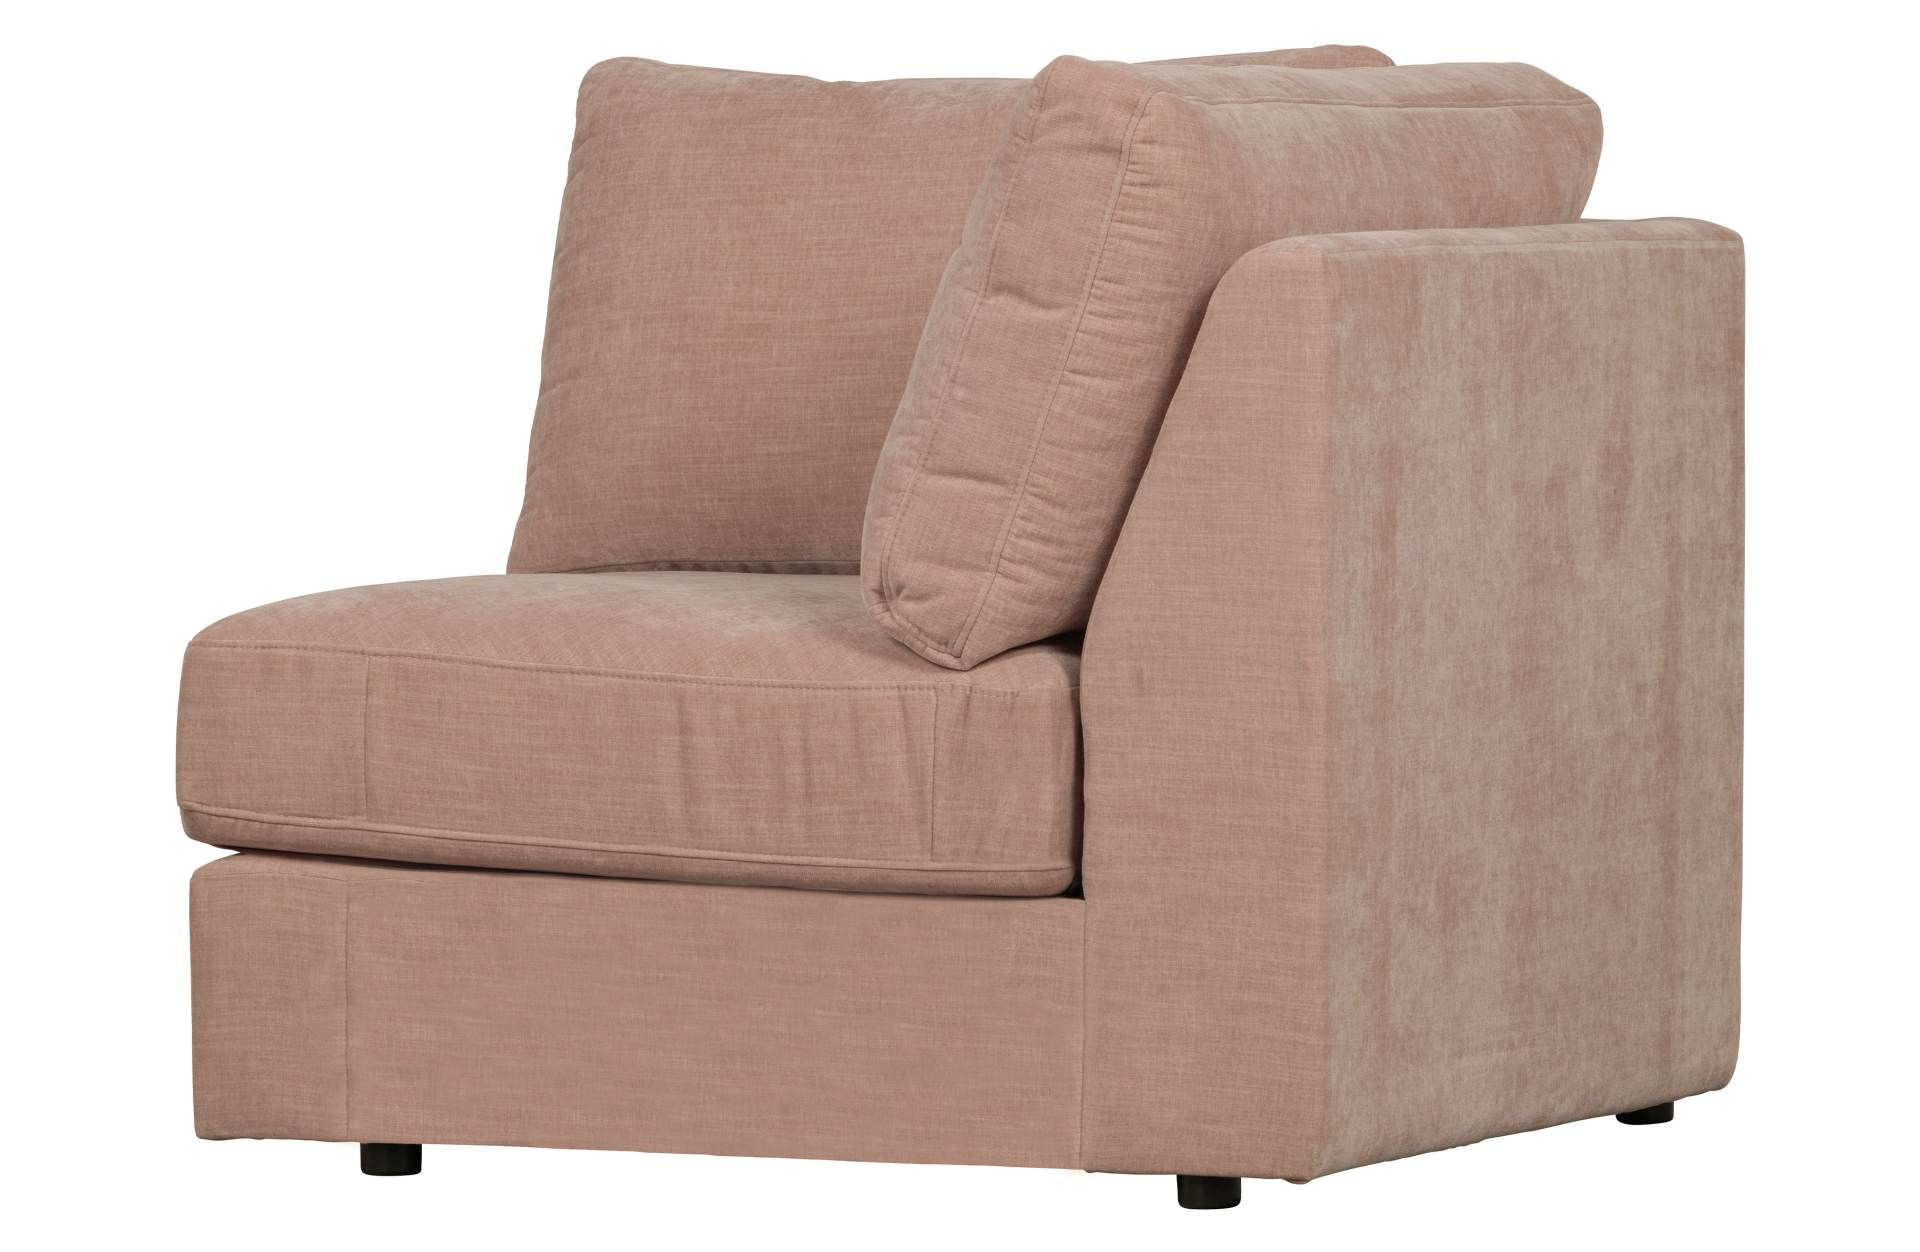 Das Modulsofa Family überzeugt mit seinem modernen Design. Das Eck Element wurde aus Gewebe-Stoff gefertigt, welcher einen einen rosa Farbton besitzen. Das Gestell ist aus Metall und hat eine schwarze Farbe. Das Element hat eine Sitzhöhe von 44 cm.